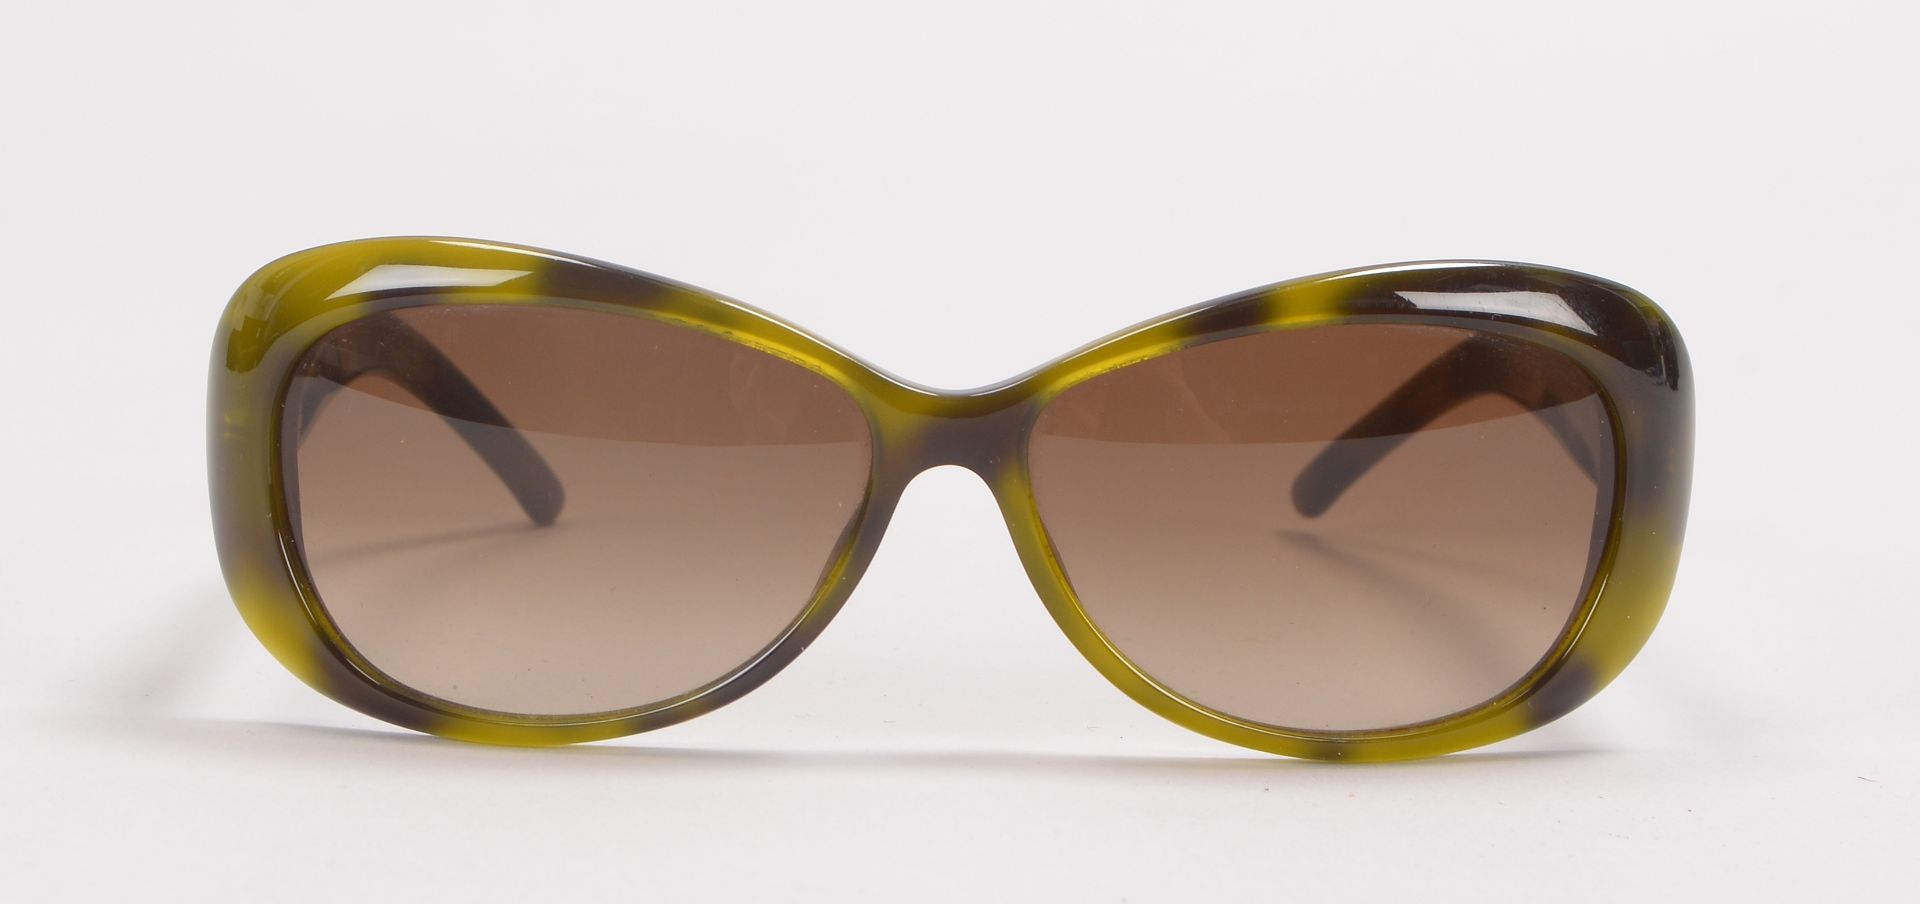 Gucci/Italien, Designer-Sonnenbrille, im Etui - in gepflegtem Zustand; Rahmenbreite 13,5 cm